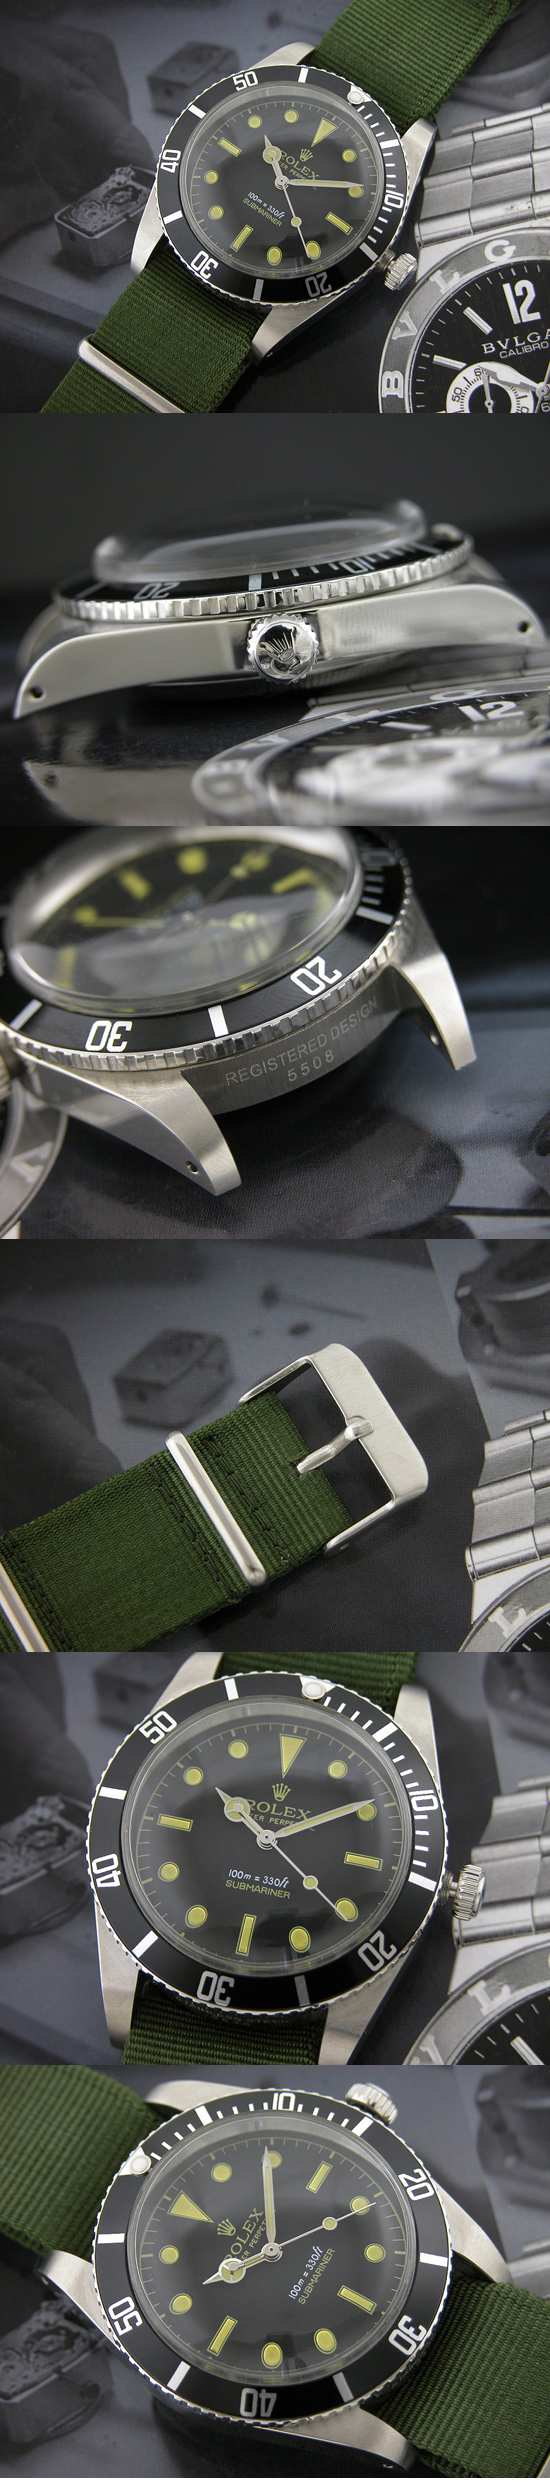 おしゃれなブランド時計がロレックス-サブマリーナ-ROLEX-16610-39-男性用を提供します.